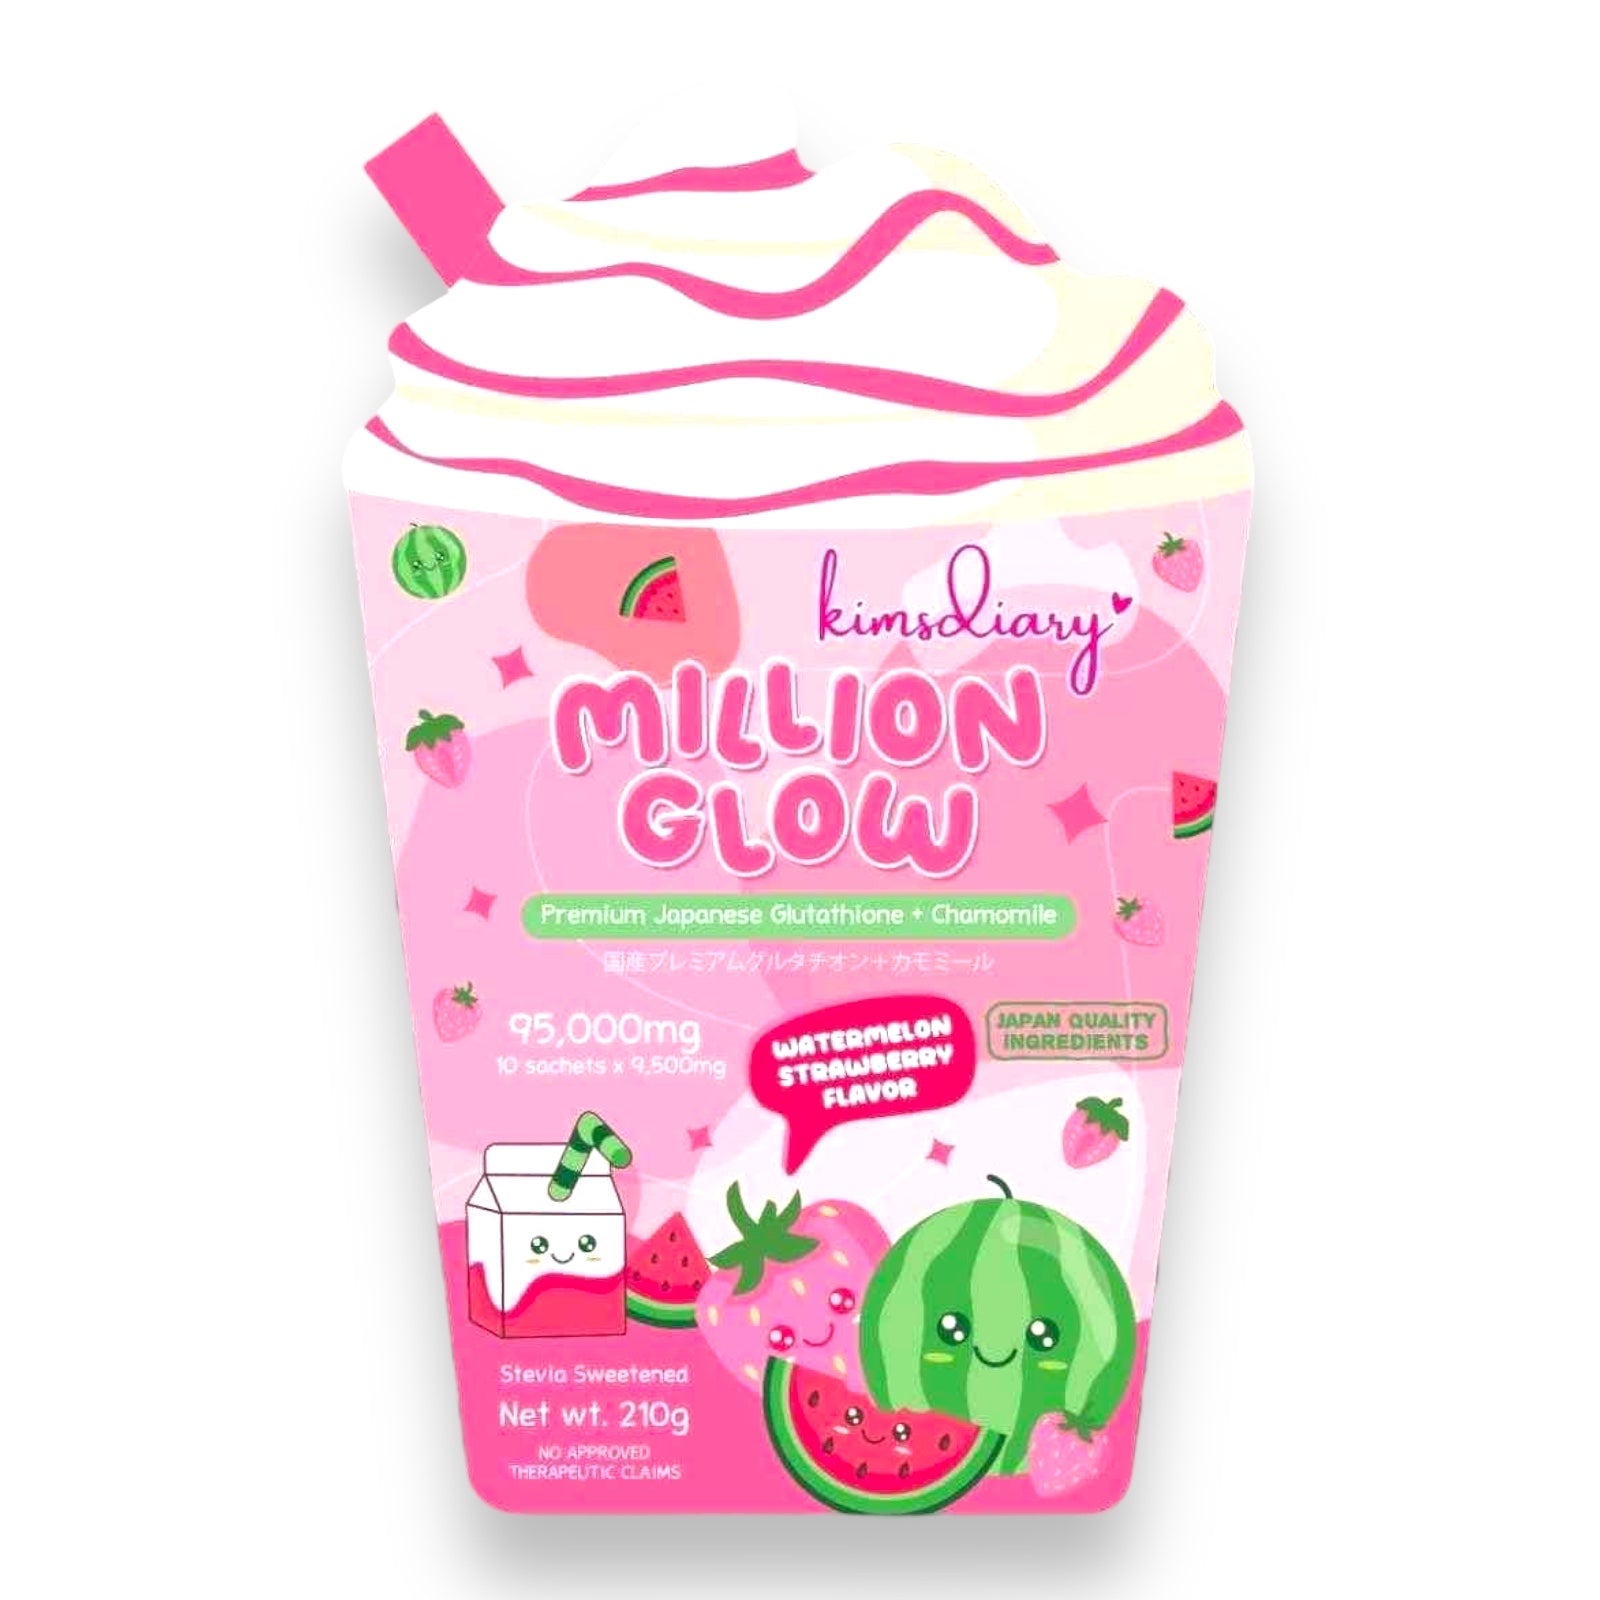 Kimsdiary - Million Glow Watermelon Strawberry Flavor 21g x 10